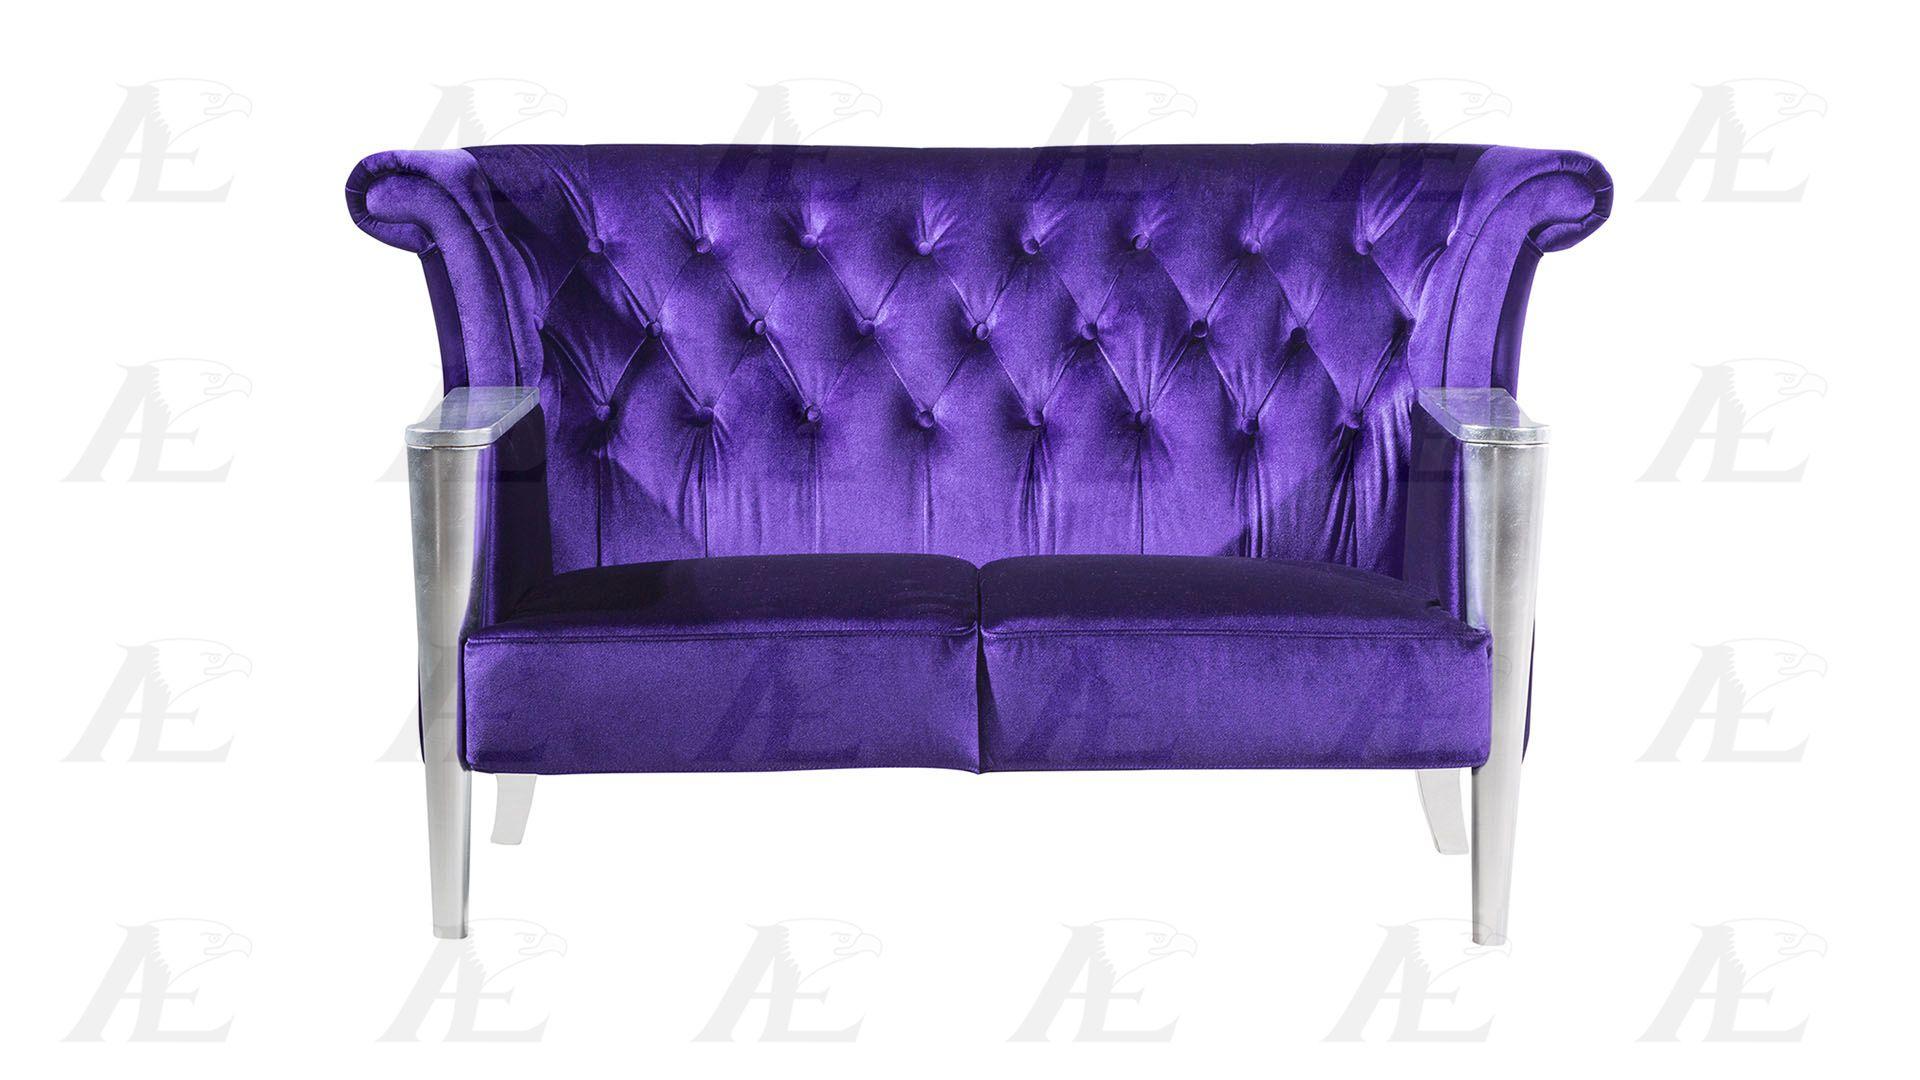 

    
AE592 Set-2 American Eagle Furniture Sofa and Loveseat Set
